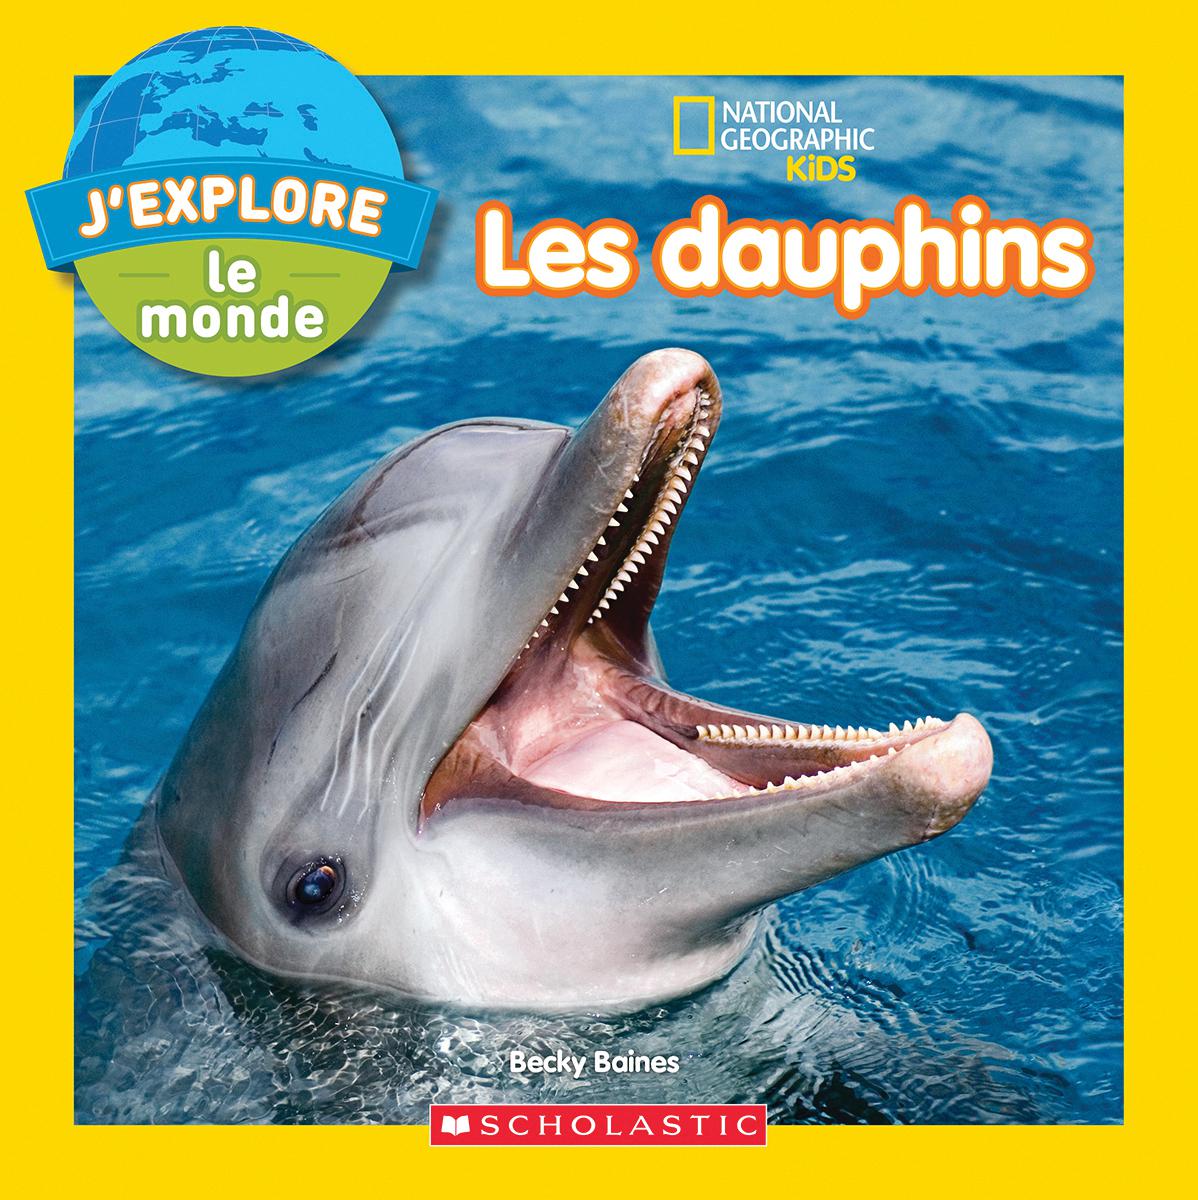  National Geographic Kids : J'explore le monde - Les dauphins 